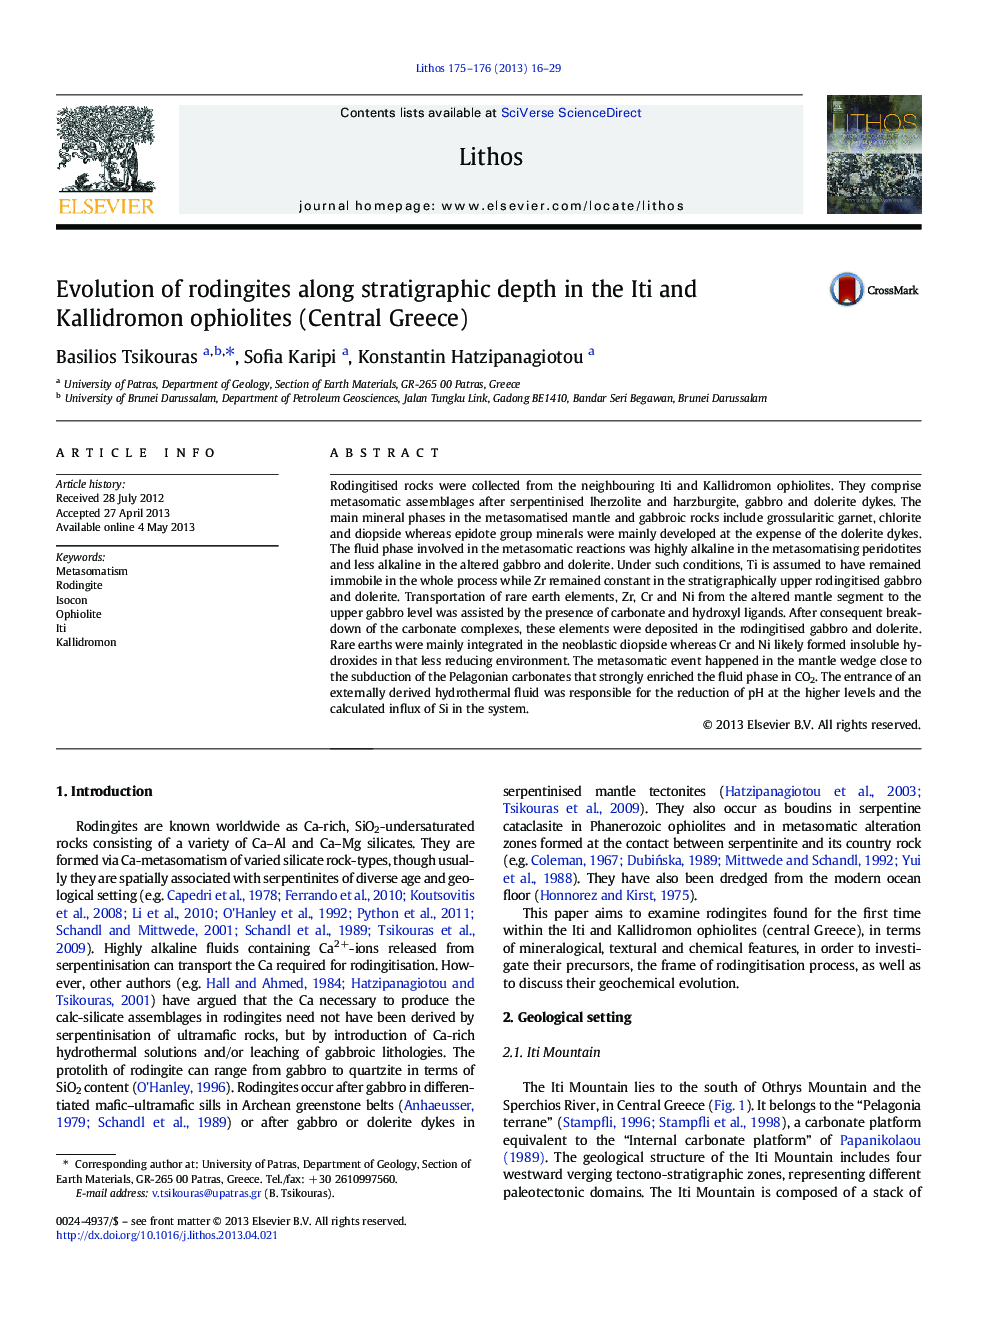 تکامل روتینگیت ها در طول عمق استراتژی در افیولیت های اتی و کالیدرومون (یونان مرکزی) 